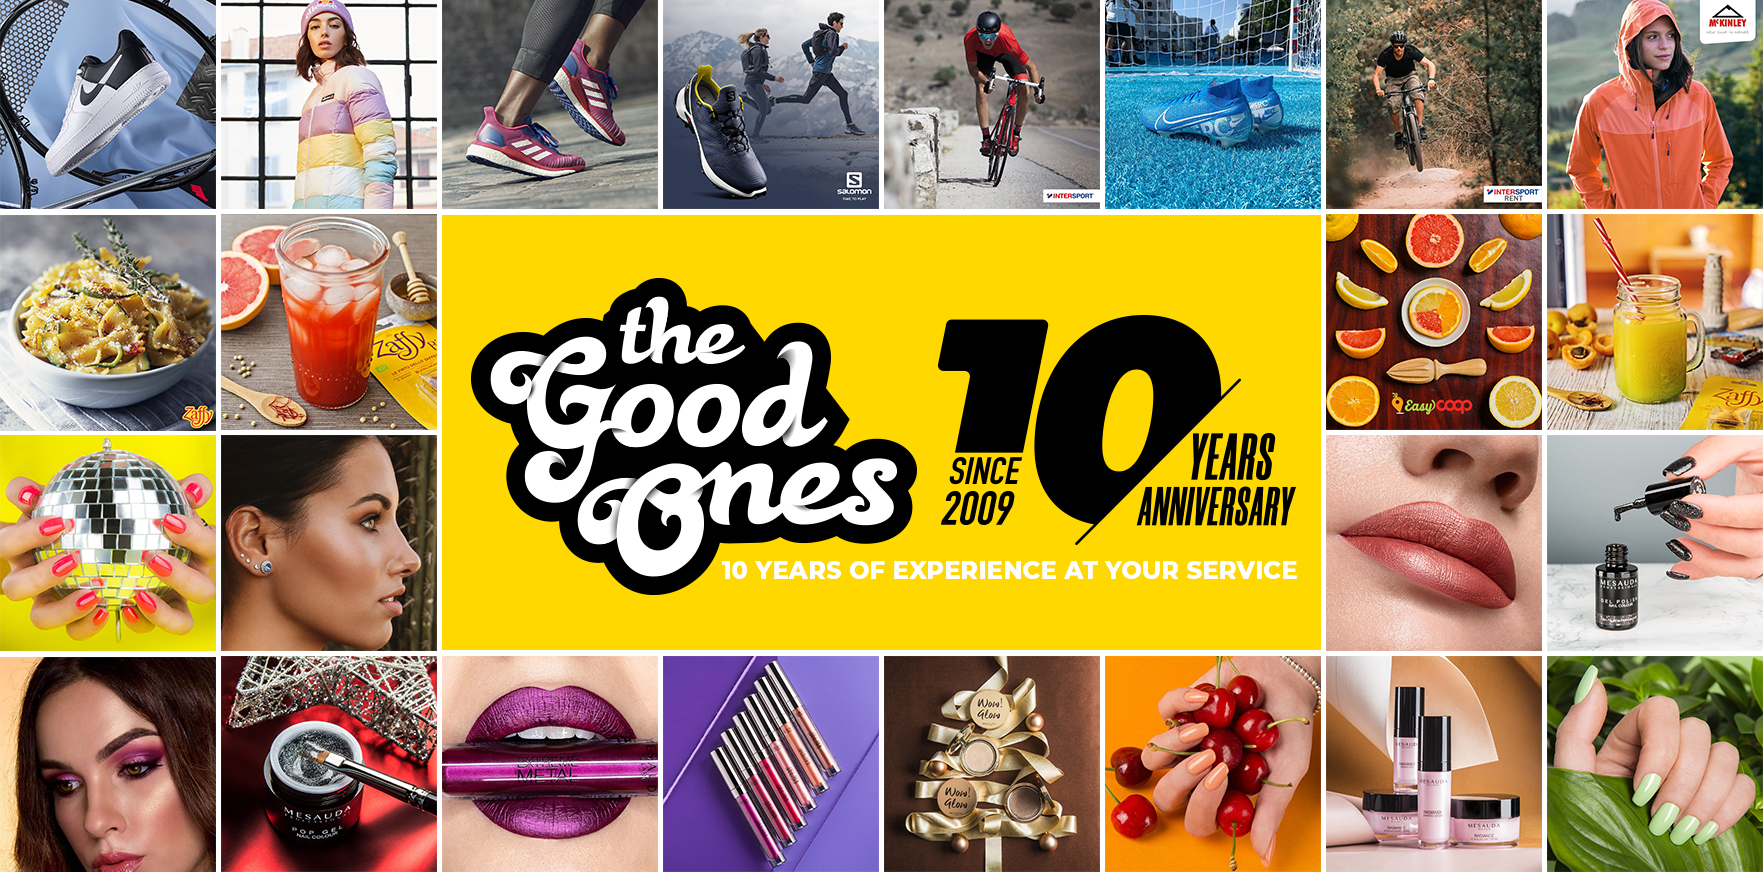 TheGoodOnes compie 10 anni di social marketing con un fatturato in crescita del +15% nel 2019